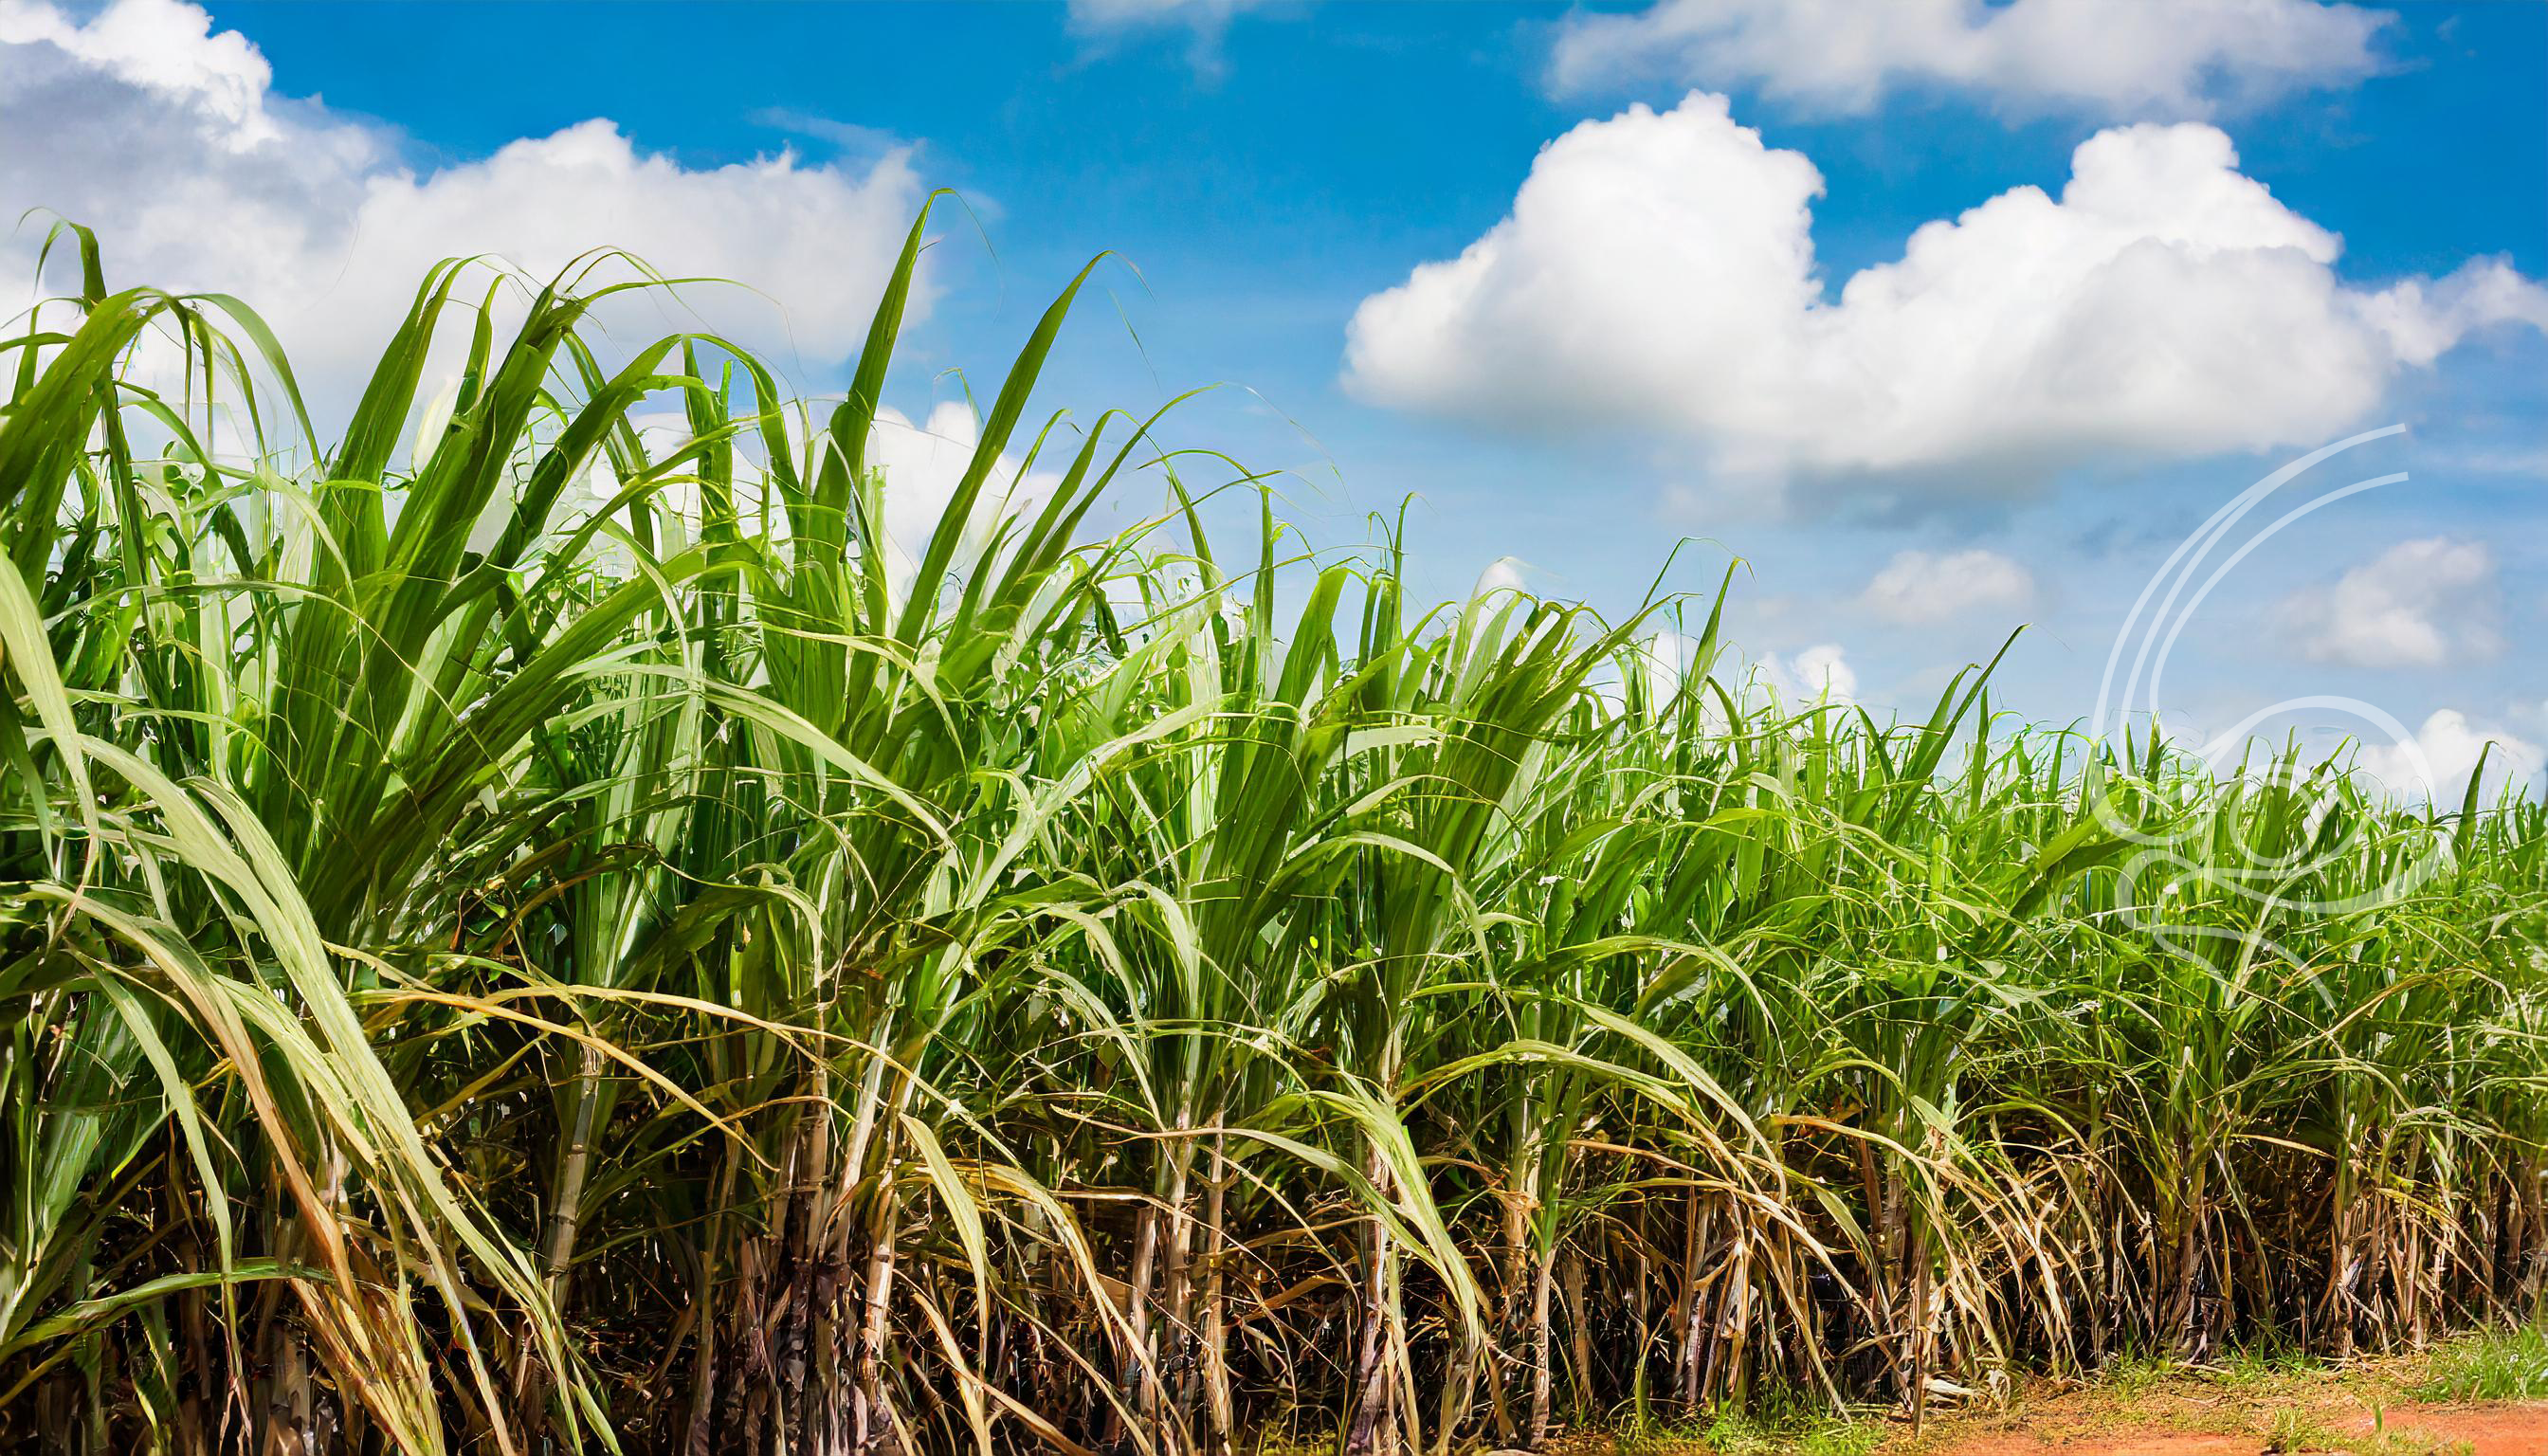 Moagem de cana-de-açúcar em Minas Gerais alcança 18,8 milhões de toneladas